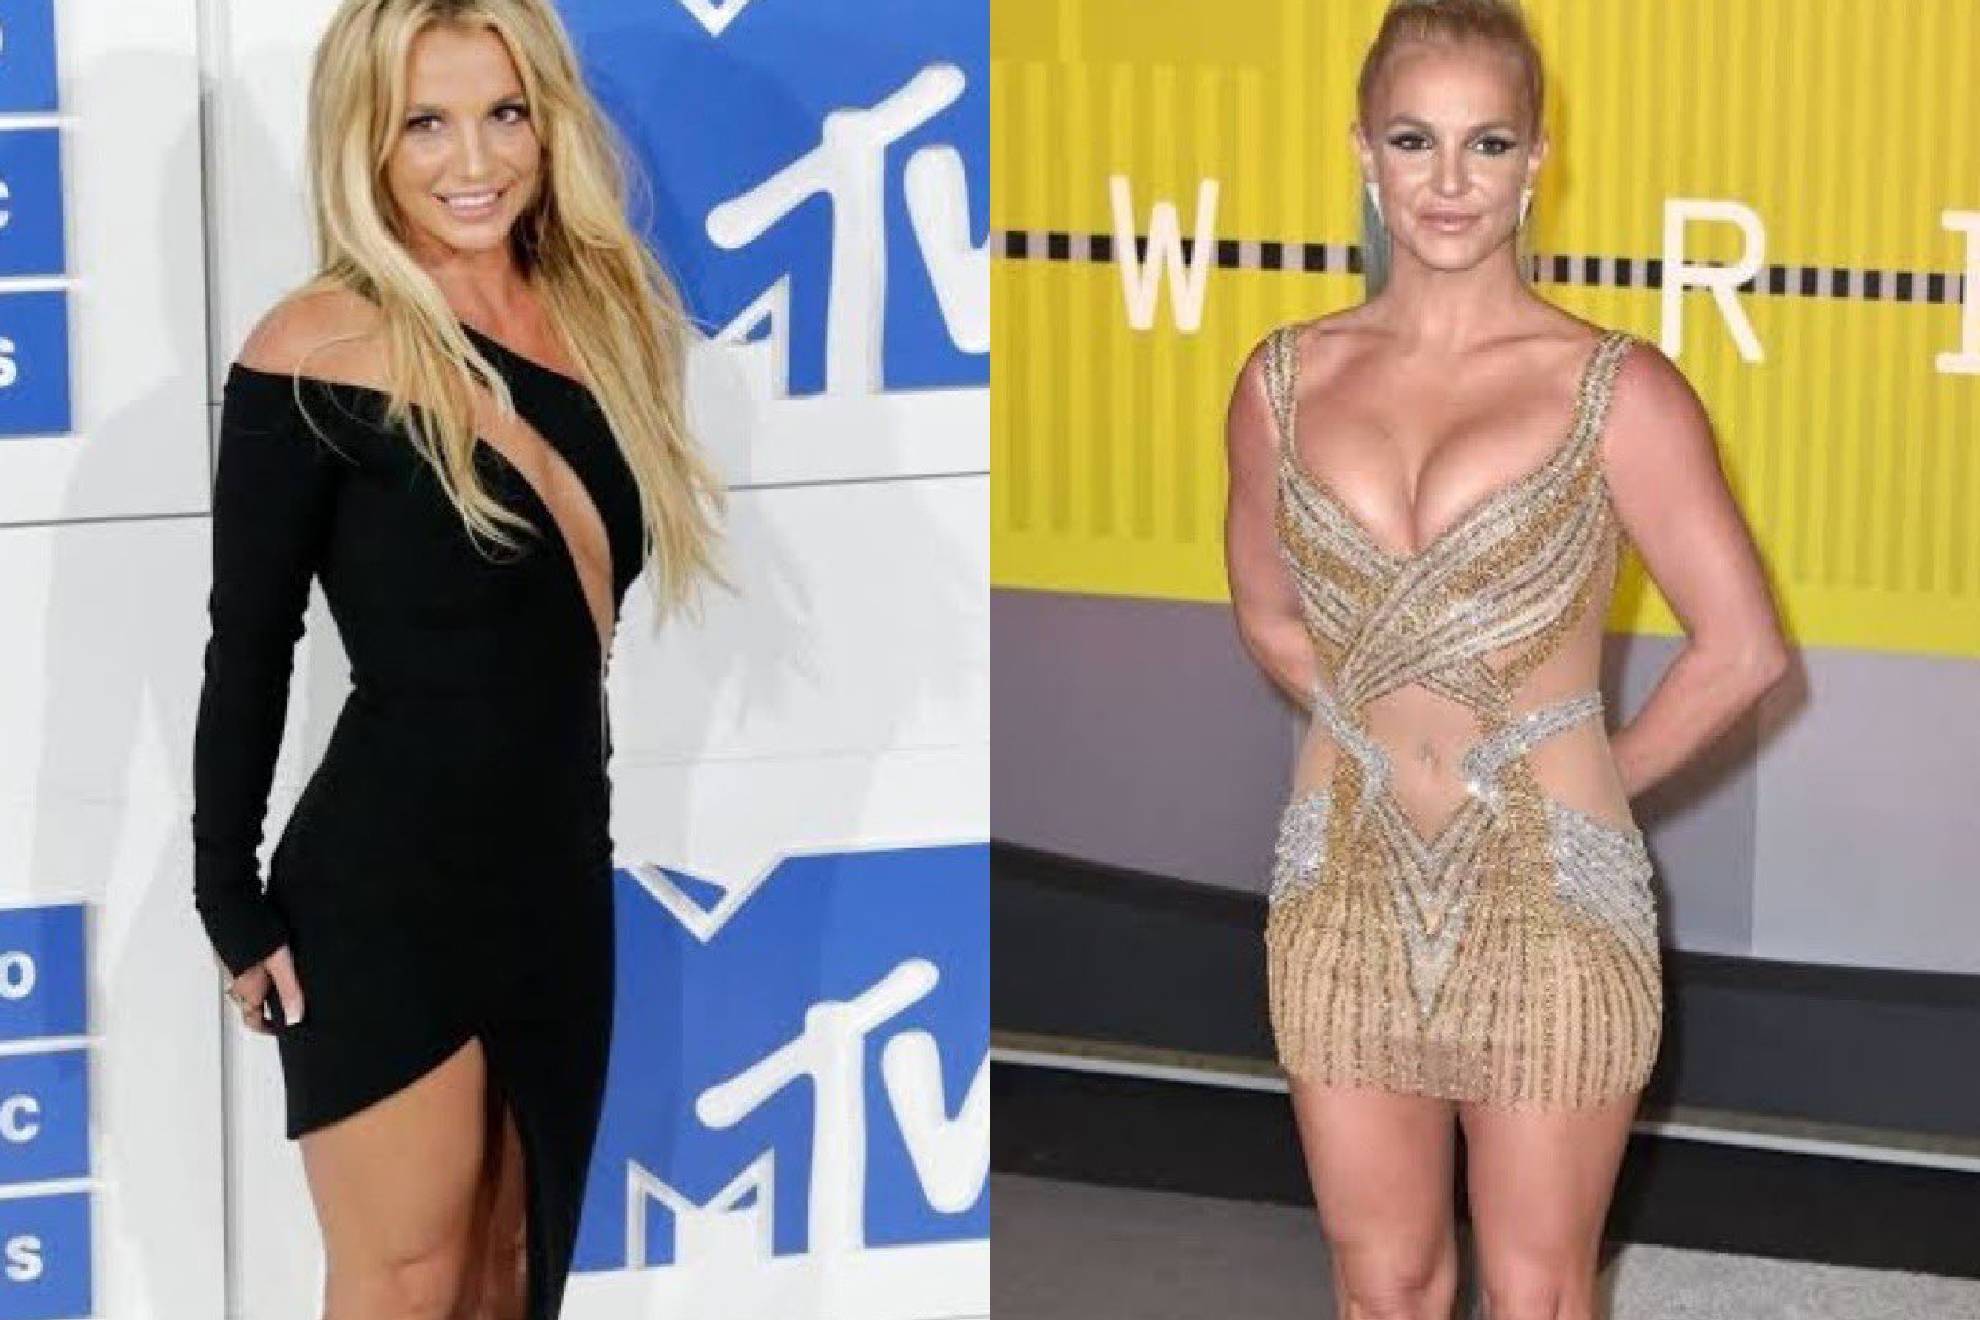 Continan los problemas en la vida de la exitosa cantante Britney Spears.